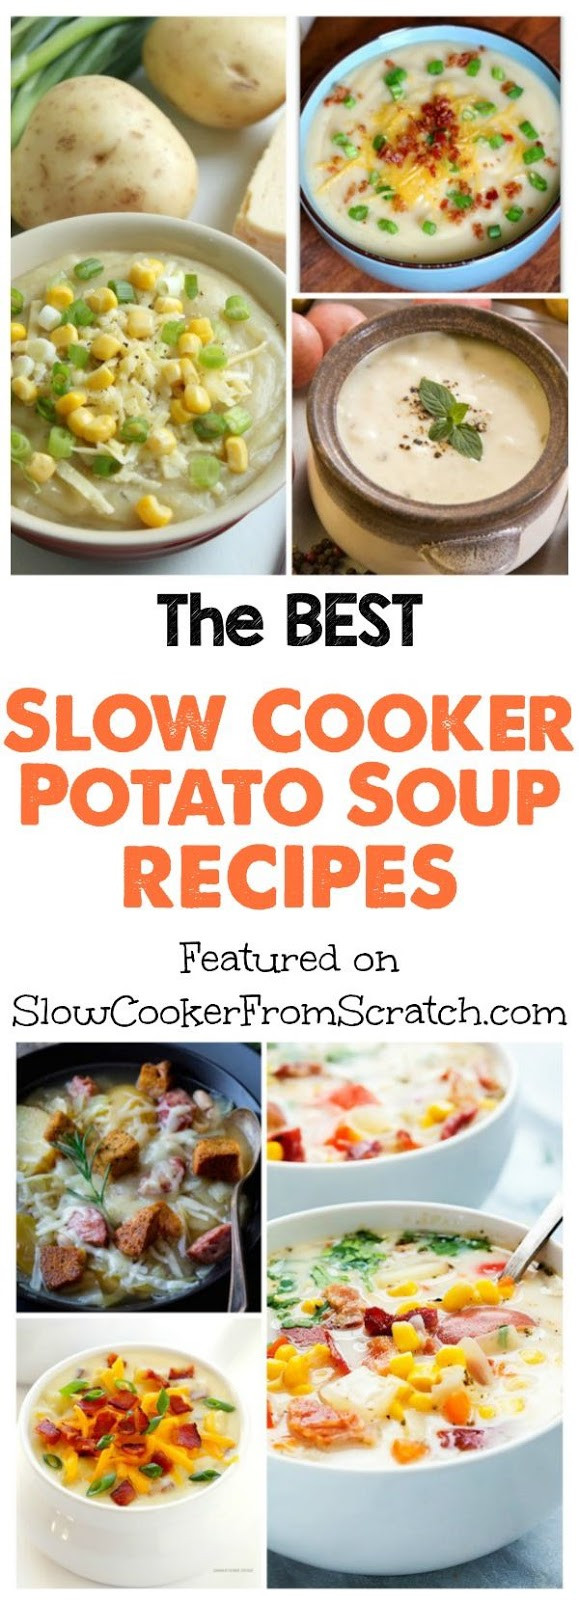 Slow Cooker Potato Soup Recipes
 The BEST Slow Cooker Potato Soup Recipes Slow Cooker or